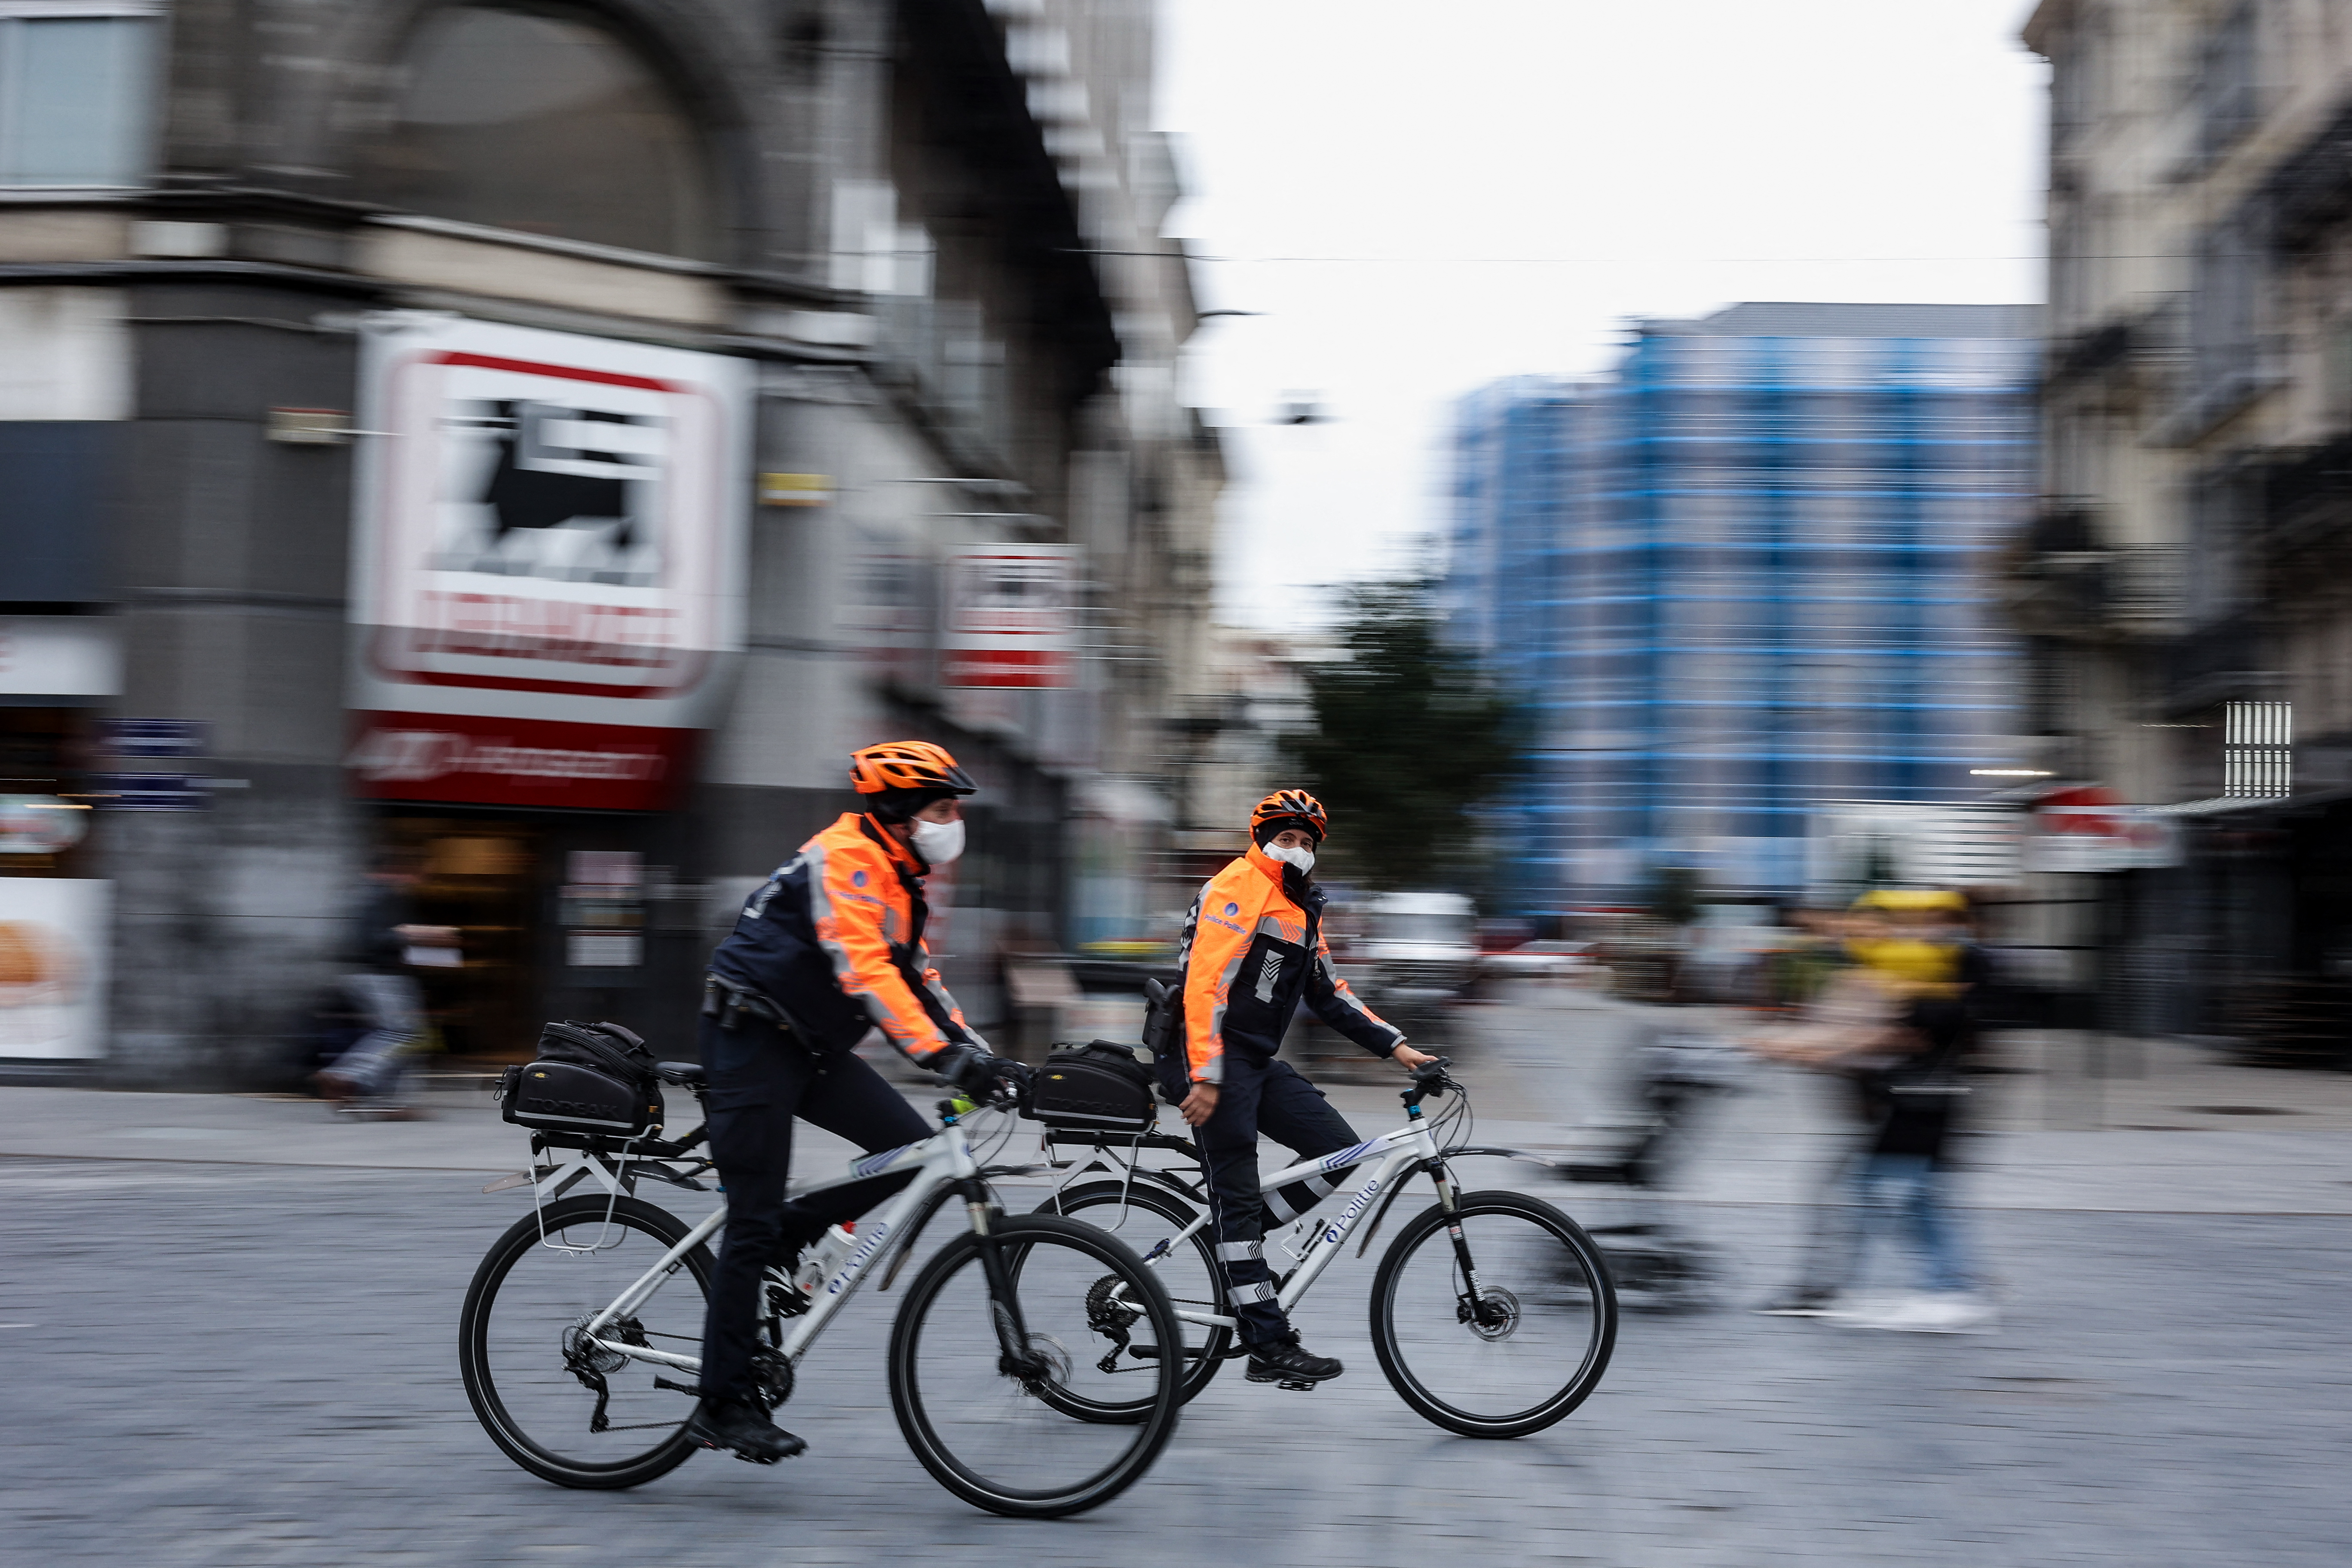 La brigade cycliste de la police bruxelloise a délivré près de 90 000 amendes en 2021